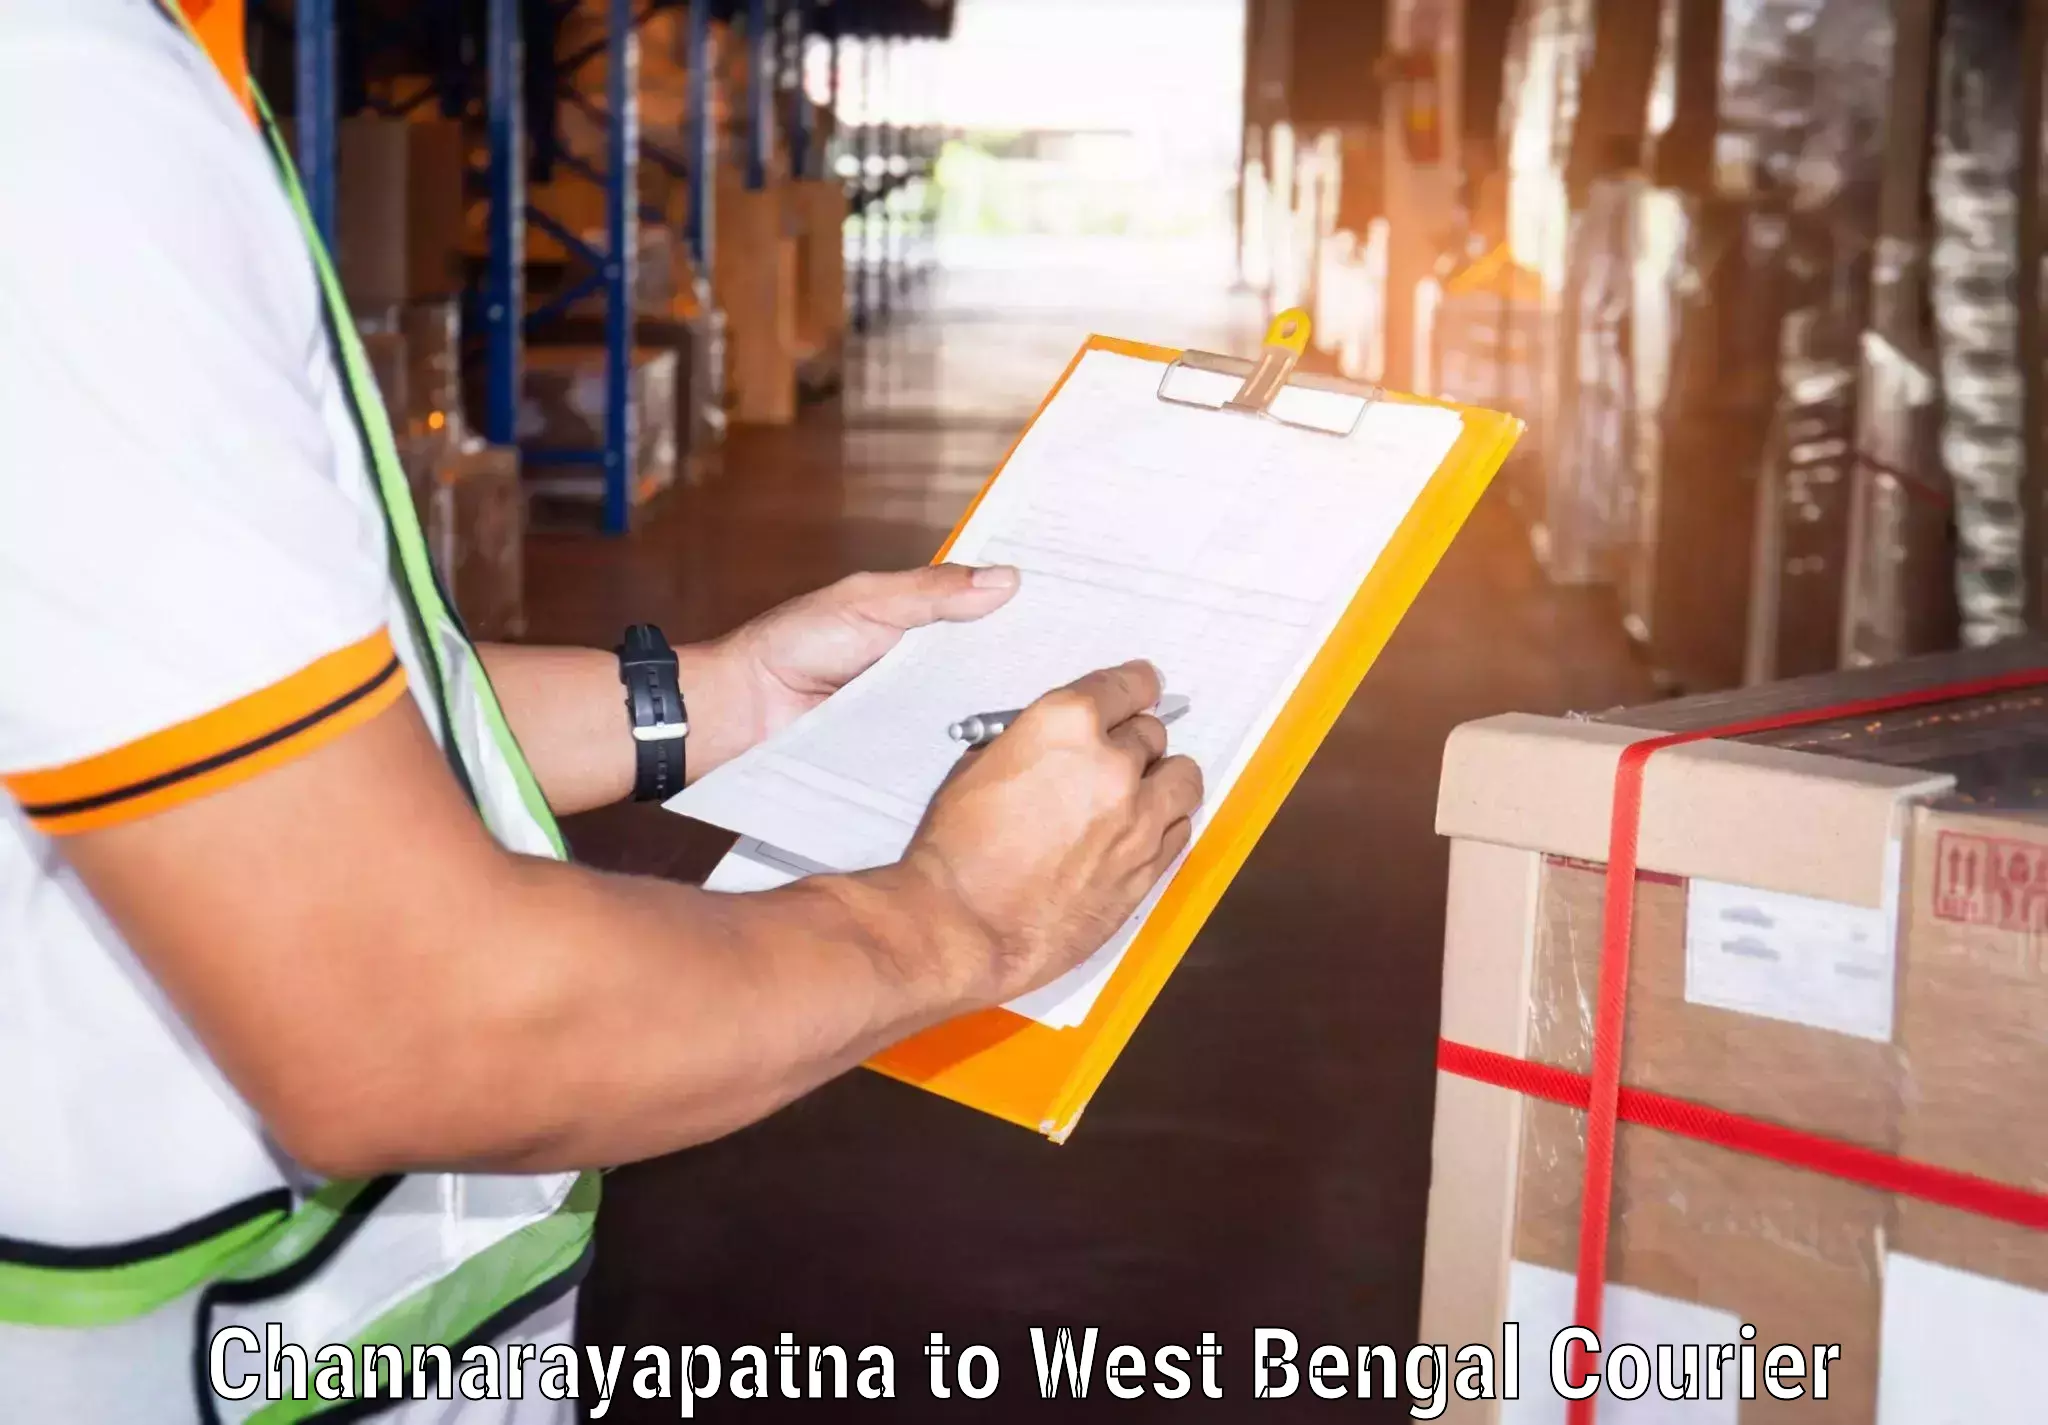 Professional courier handling Channarayapatna to Maheshtala